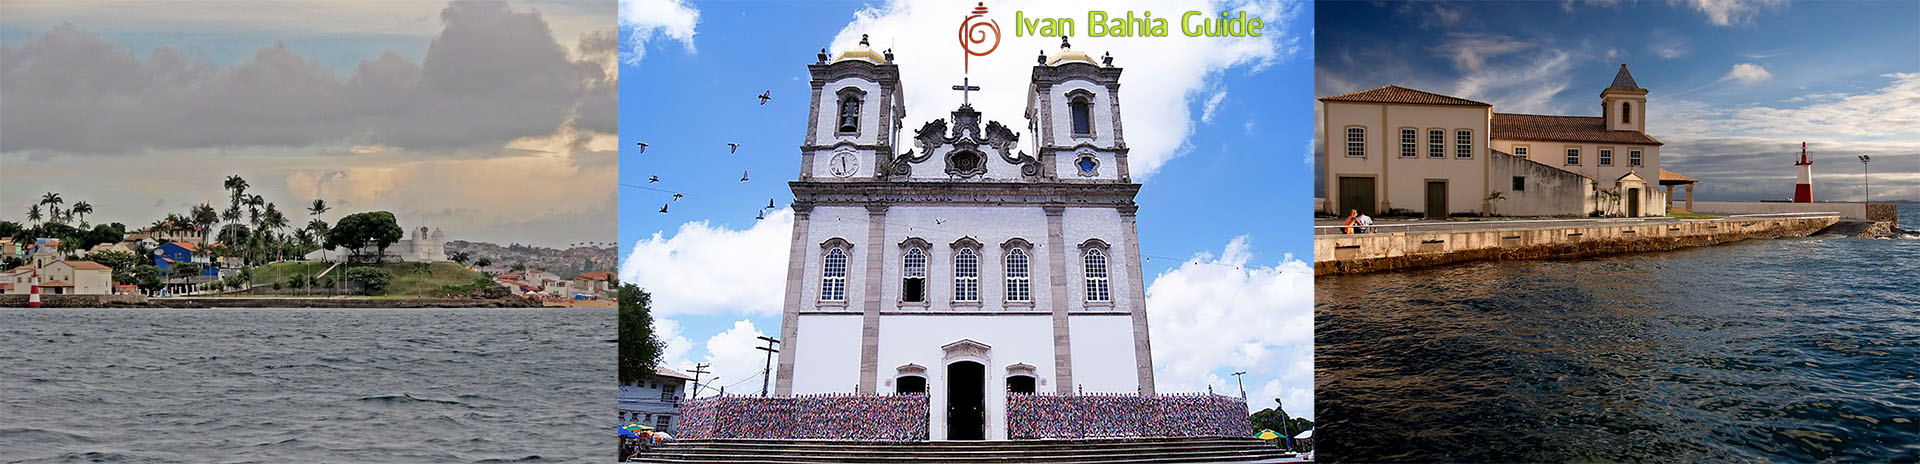 visit Salvador da Bahia, Ribeira and Bonfim with Ivan Bahia Guide / Photography by #IvanBahiaGuide ref., #ToursByLocals, #fernandobingre, @fernandobingre